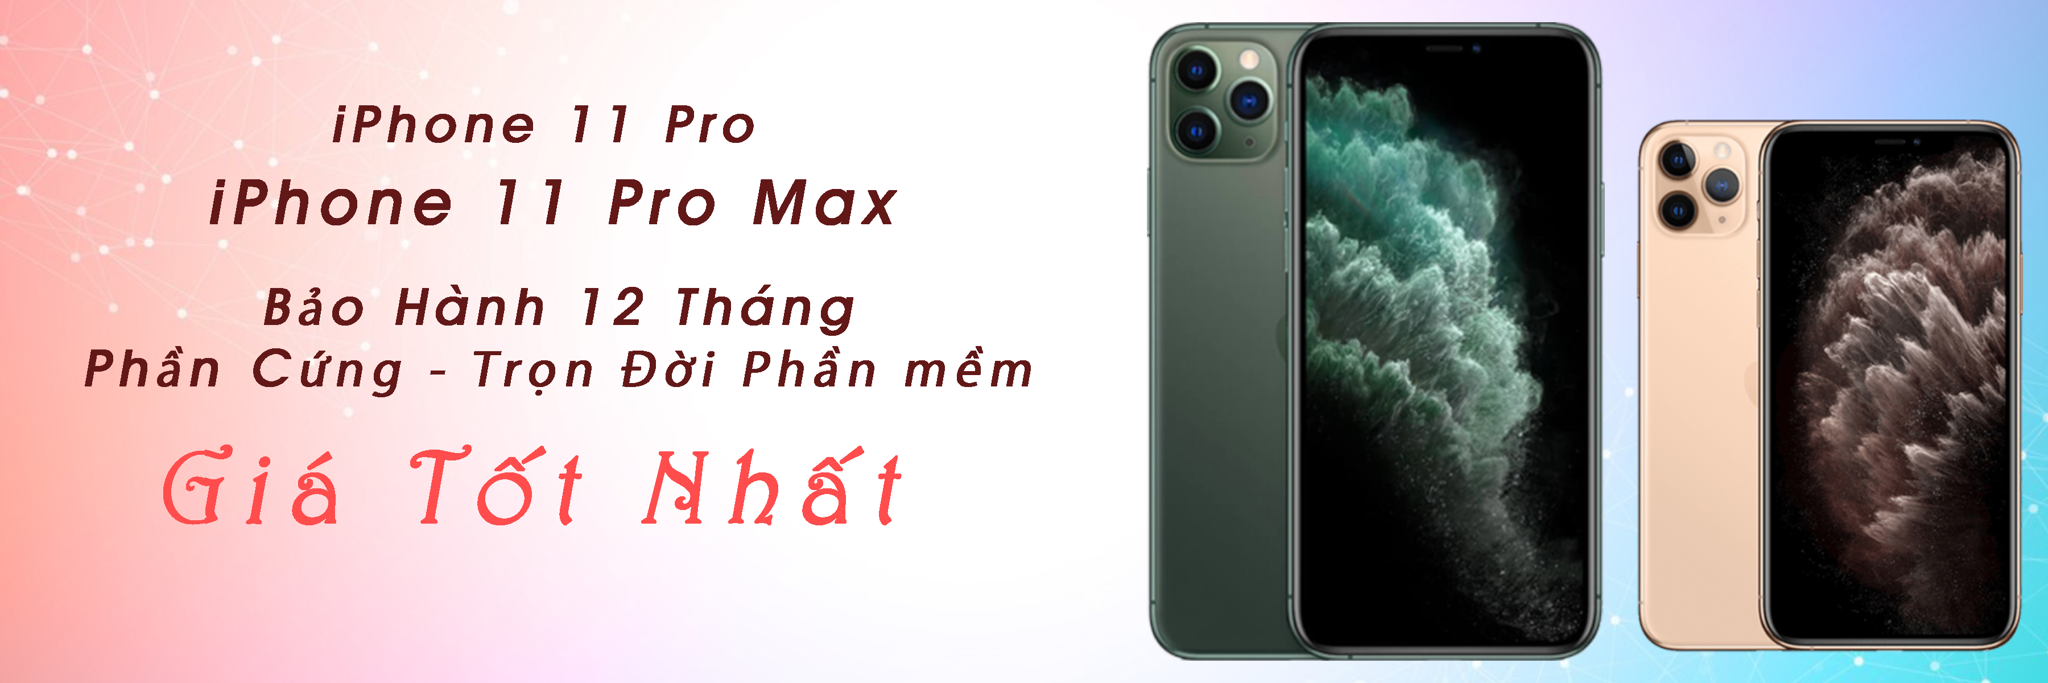 Mua iPHone 11 Pro Max Ở Đâu Uy tín